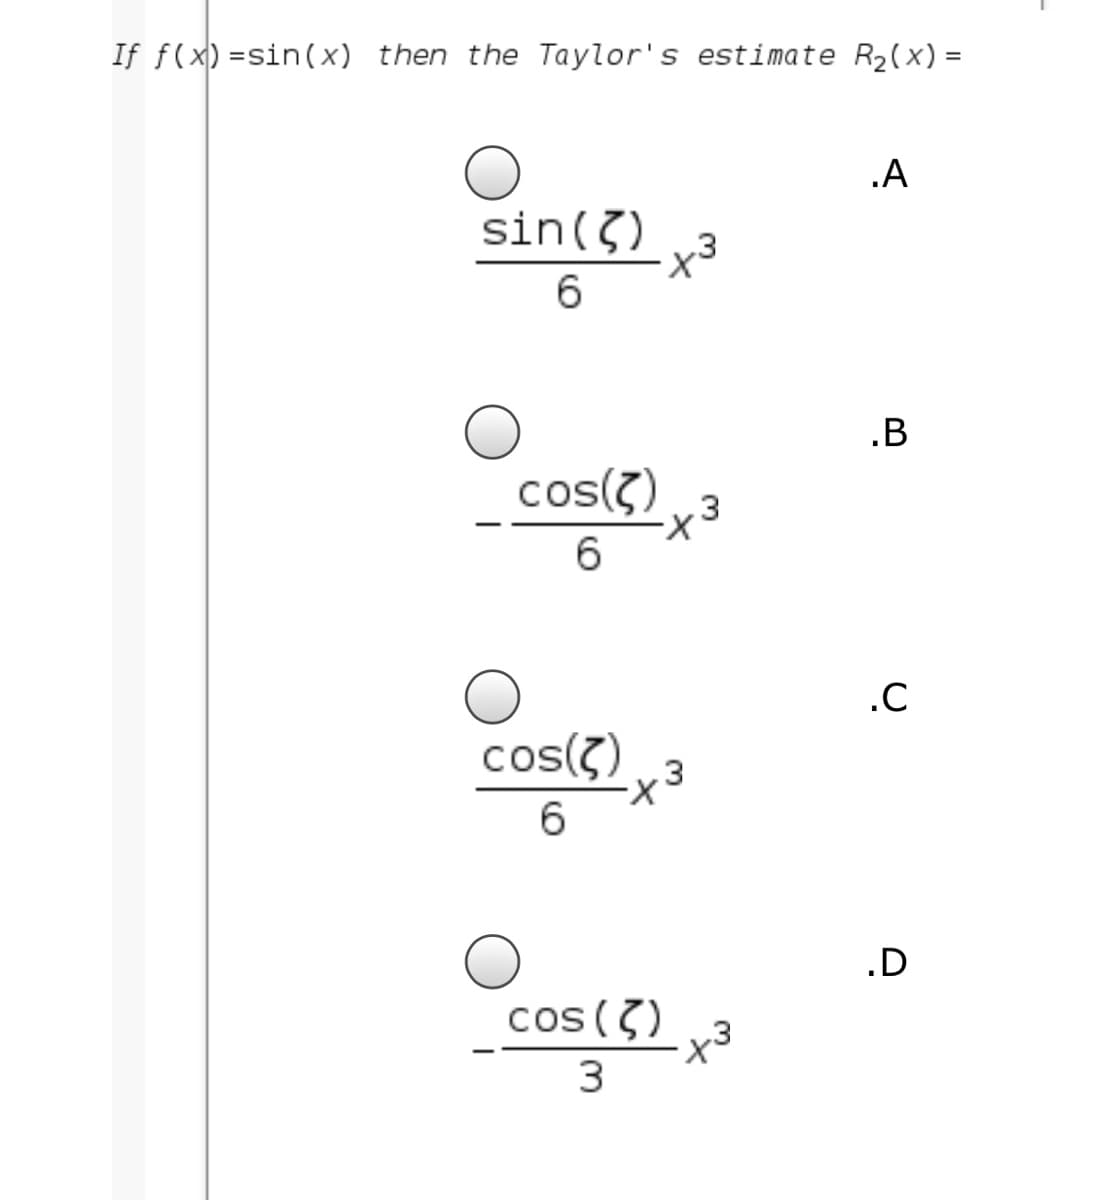 If f(x) =sin(x) then the Taylor's estimate R2(x) =
.A
sin(3)
-3
6
cos(?)
.3
6.
.C
cos(?)
.3
X-
6.
.D
cos (7)
x3
